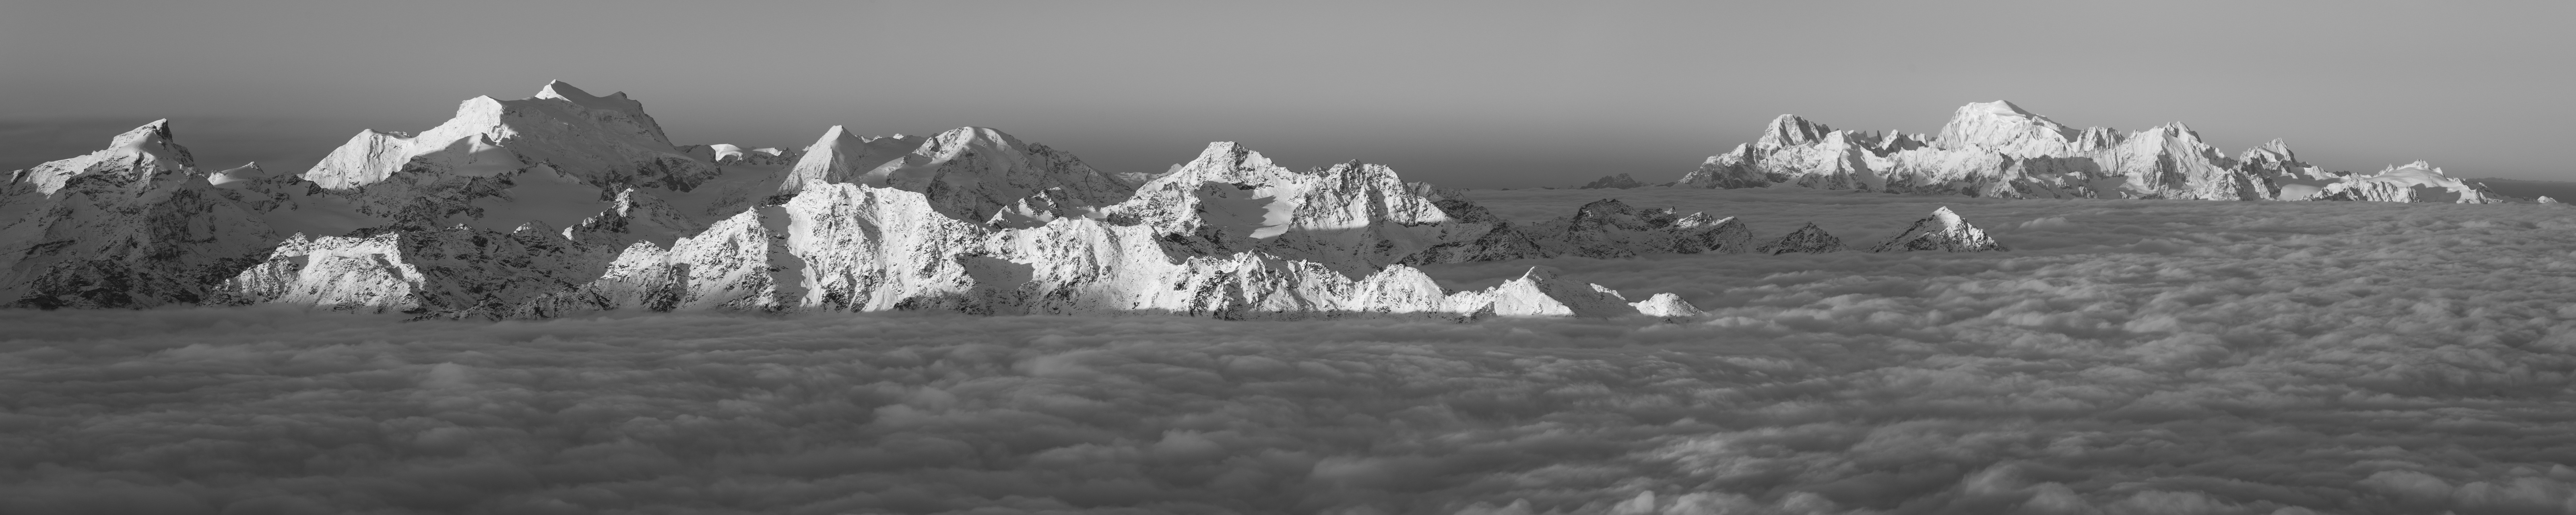 Verbier Suisse - Grand combin - Poster panoramique montagne noir et blanc